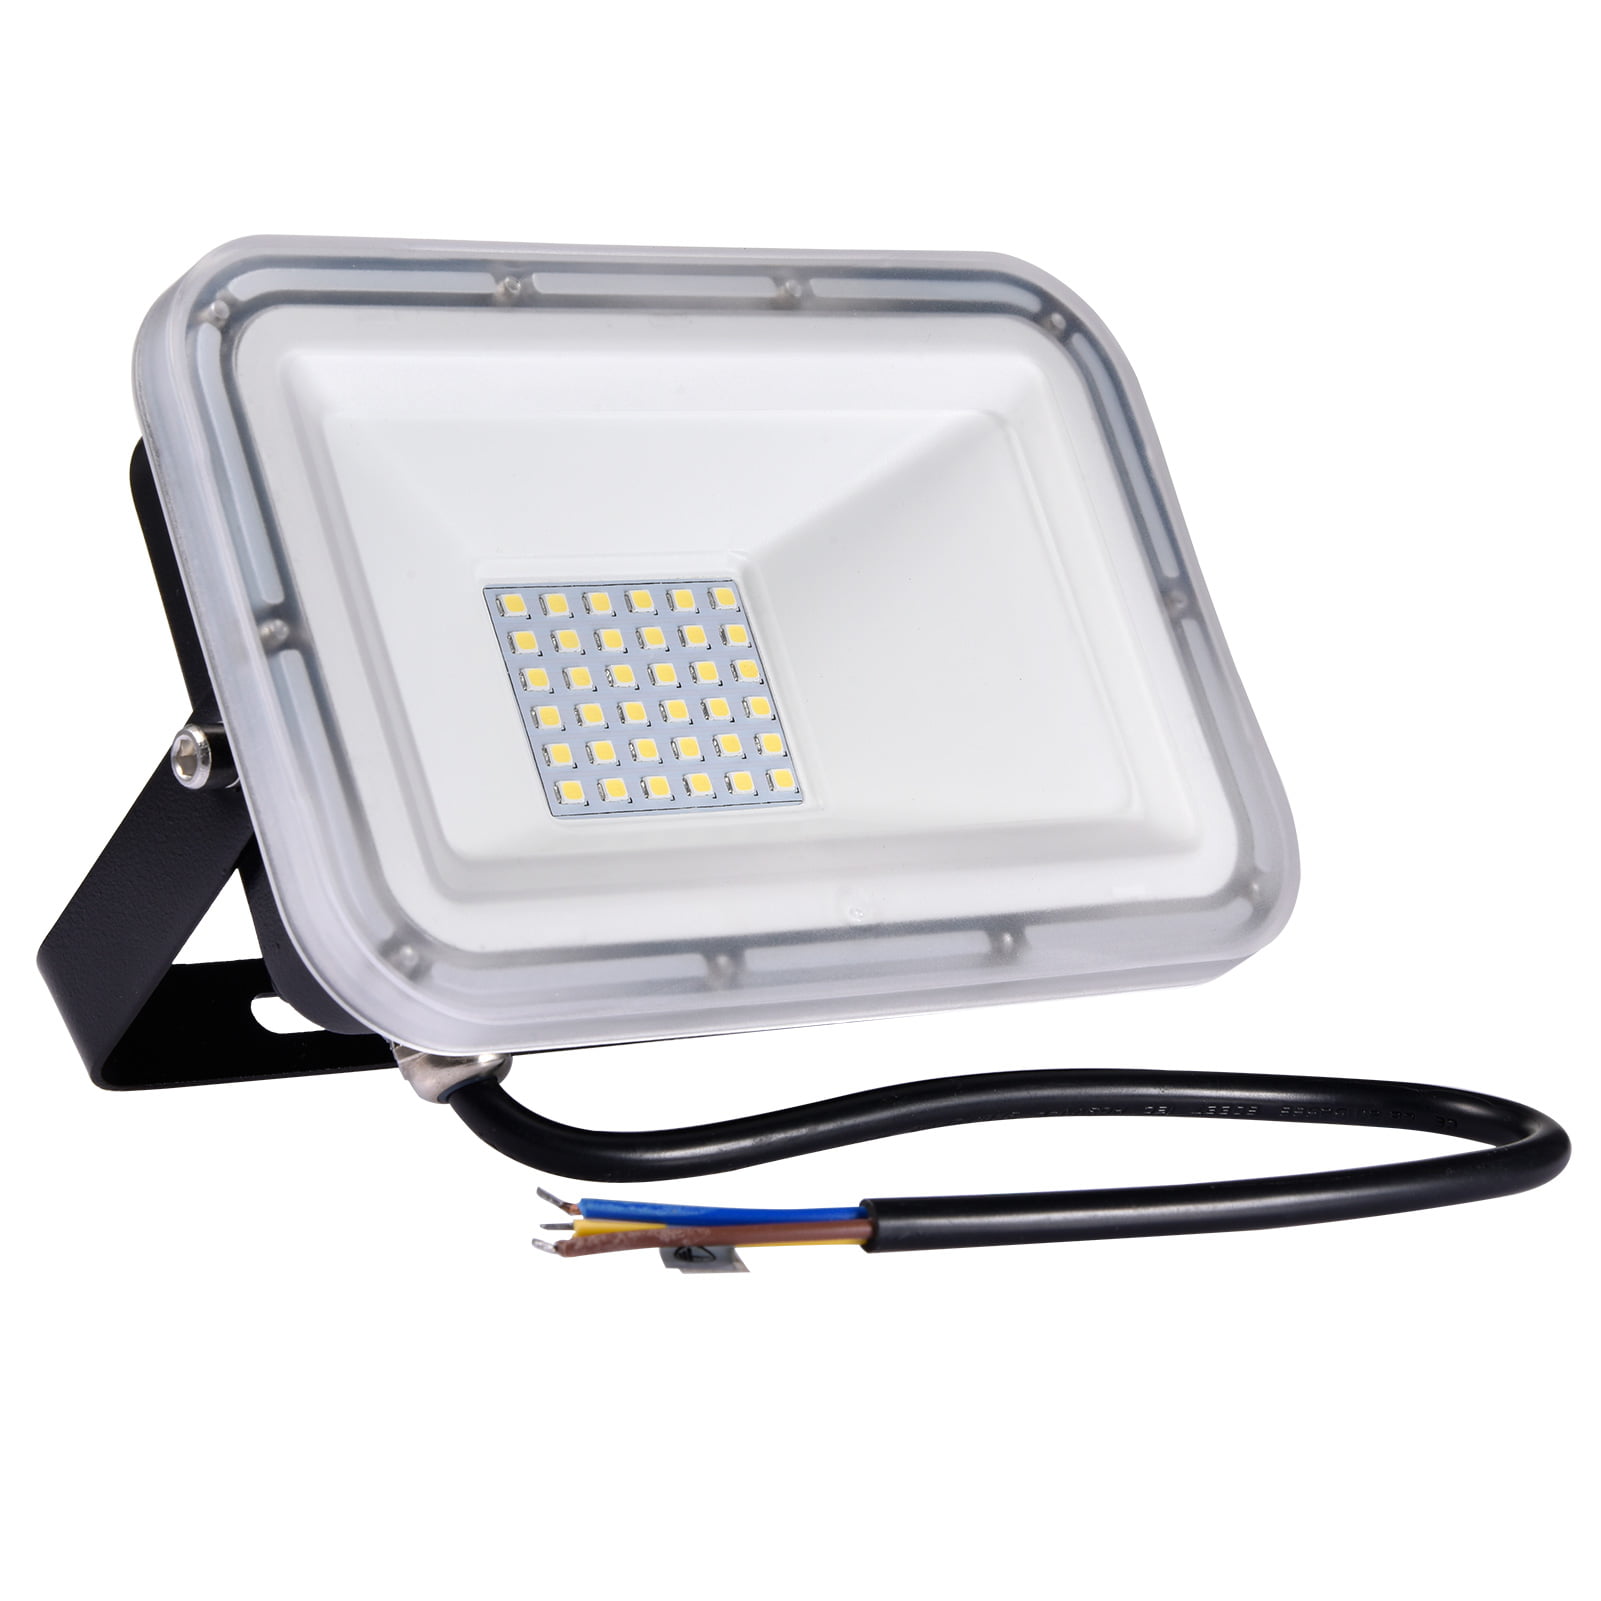 2X 100W LED Flood Light Cool White Outdoor Spotlight Garden Yard Lamp 110V IP67 